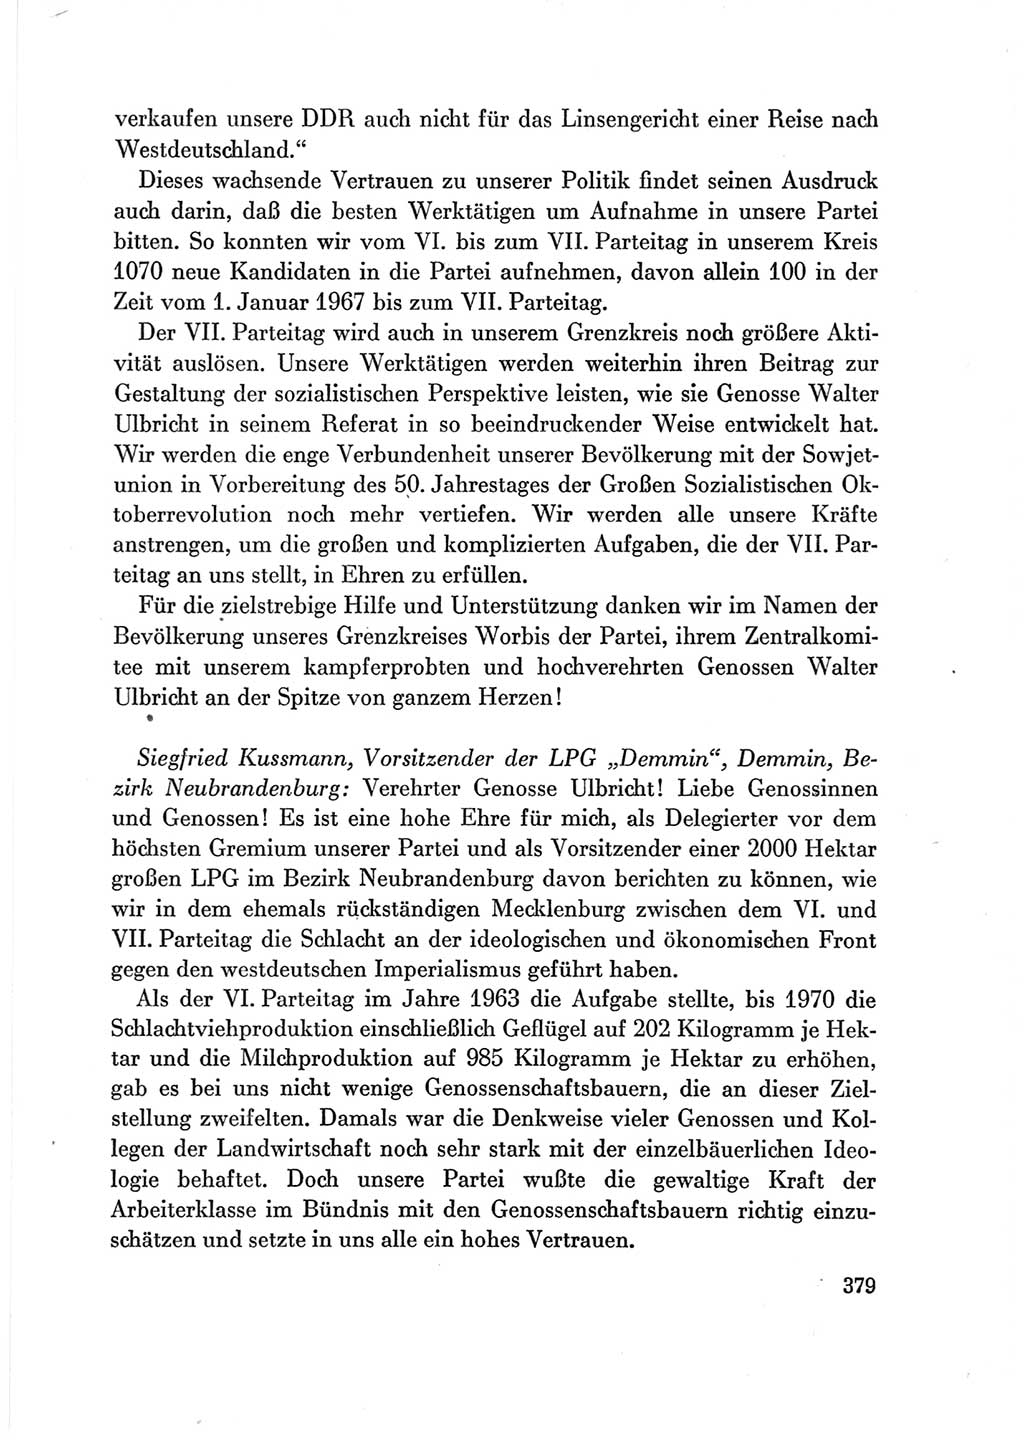 Protokoll der Verhandlungen des Ⅶ. Parteitages der Sozialistischen Einheitspartei Deutschlands (SED) [Deutsche Demokratische Republik (DDR)] 1967, Band Ⅲ, Seite 379 (Prot. Verh. Ⅶ. PT SED DDR 1967, Bd. Ⅲ, S. 379)